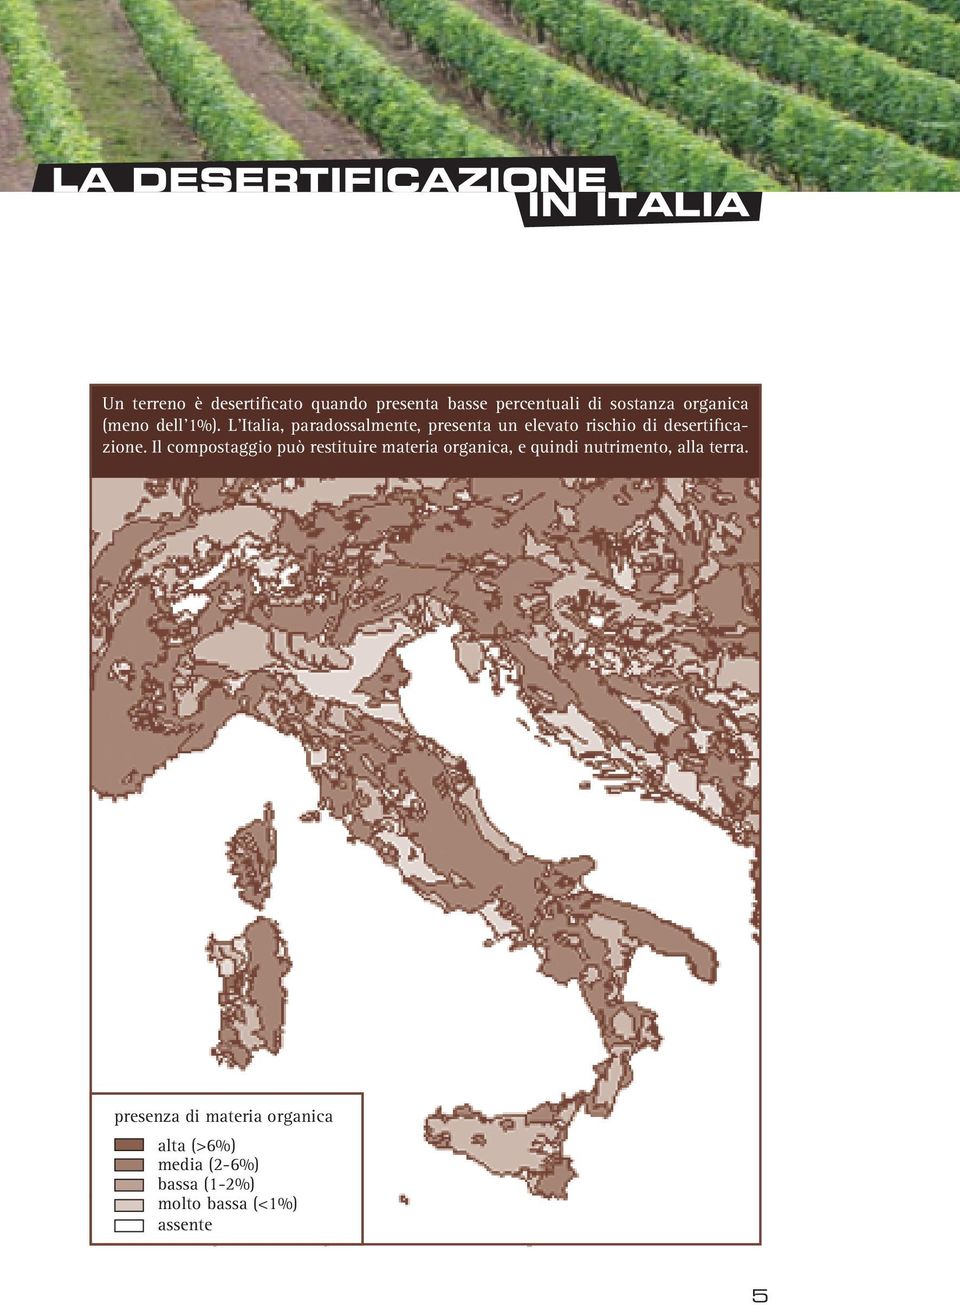 L Italia, paradossalmente, presenta un elevato rischio di desertificazione.